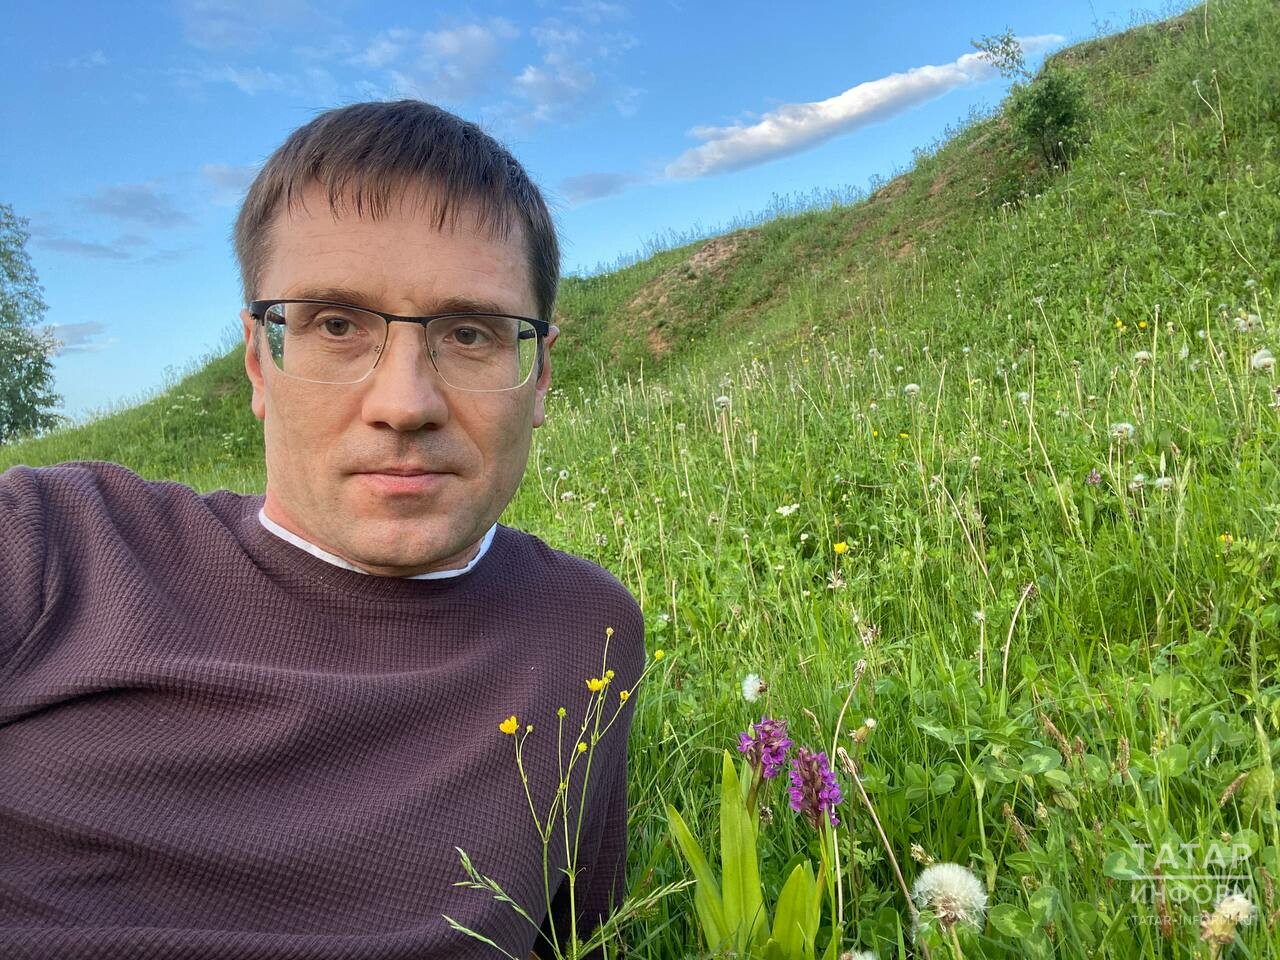 Журналист «Татар-информа» нашел редкое краснокнижное растение в Арском районе